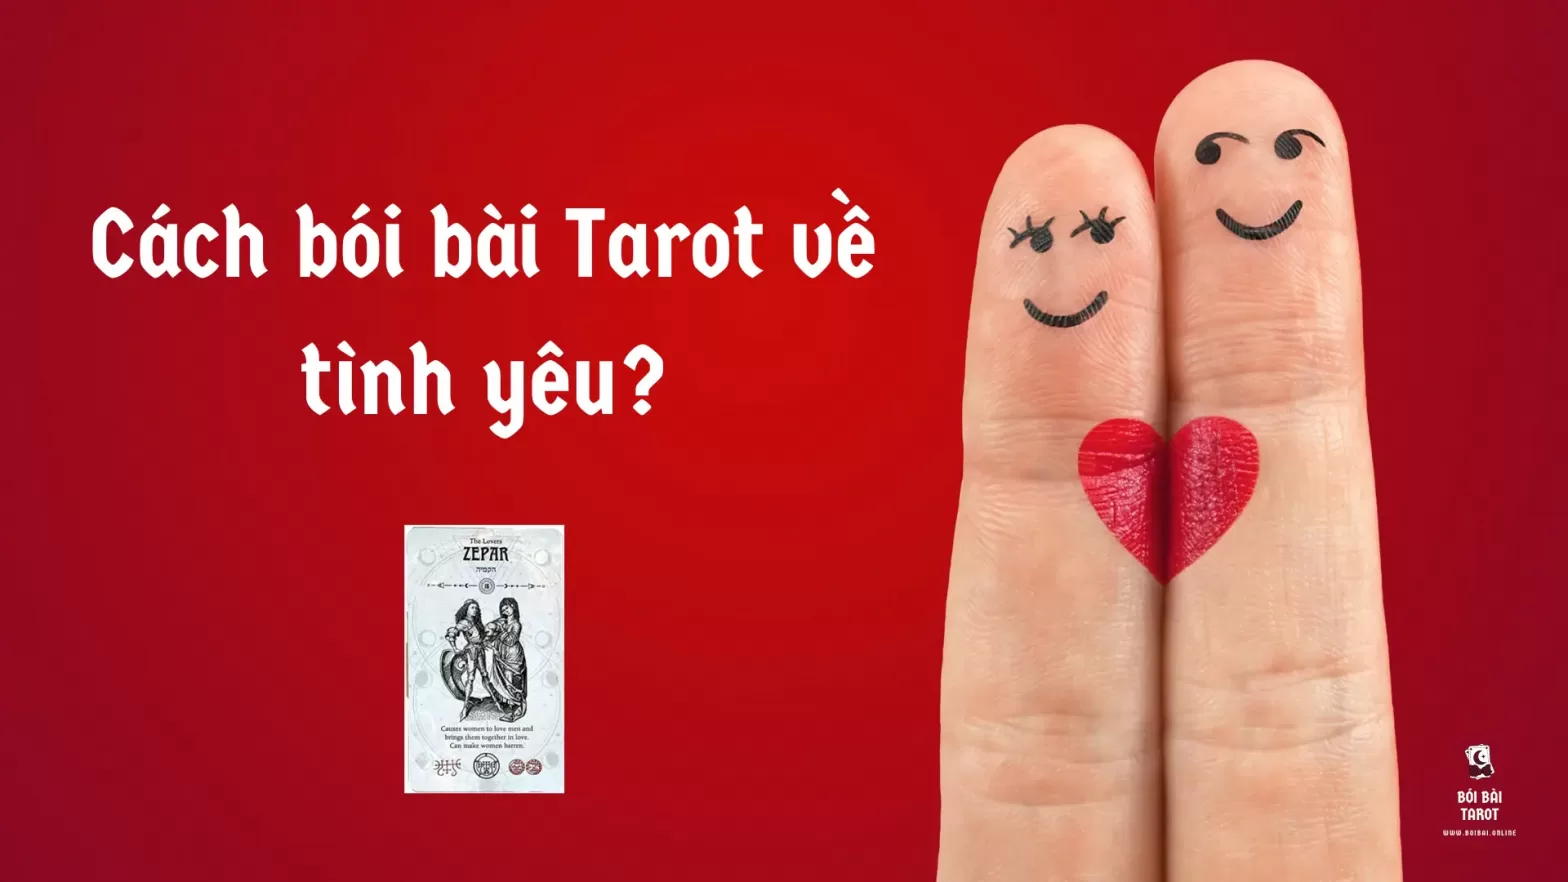 Cách bói bài Tarot về tình yêu? - BoiBai.online